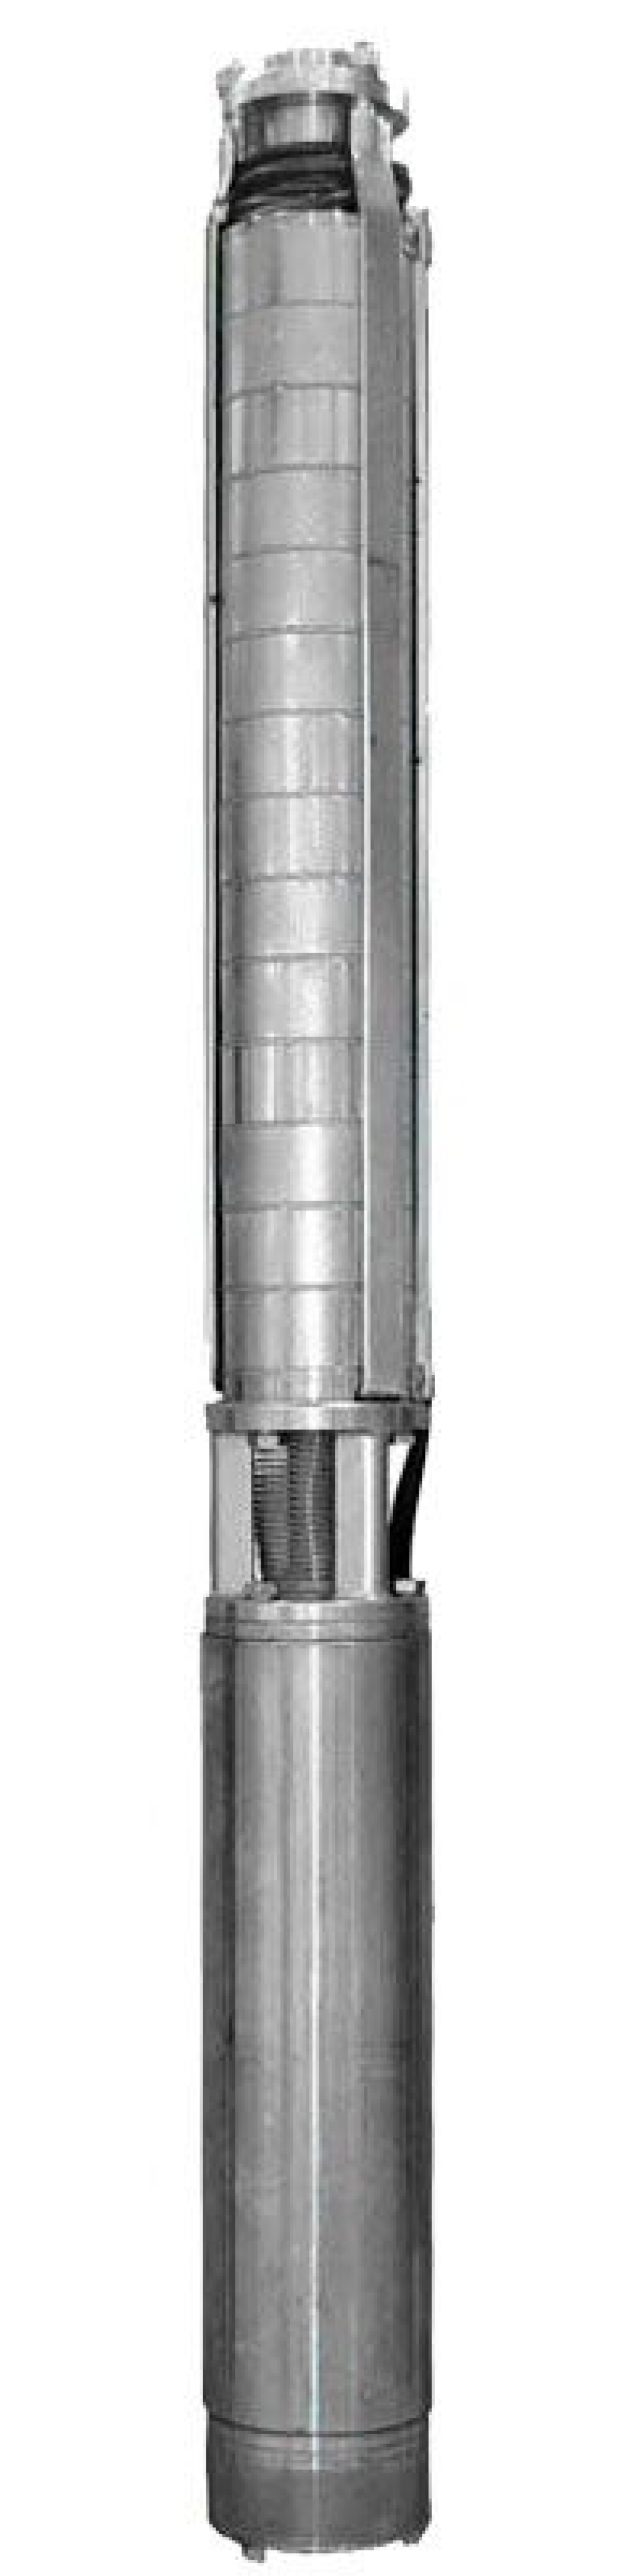 Насос скважинный Ливнынасос ЭЦВ 4-10-40 центробежный, производительность 10 м3/час, напор 40 м, мощность 3 кВт, напряжение трехфазной сети 380В